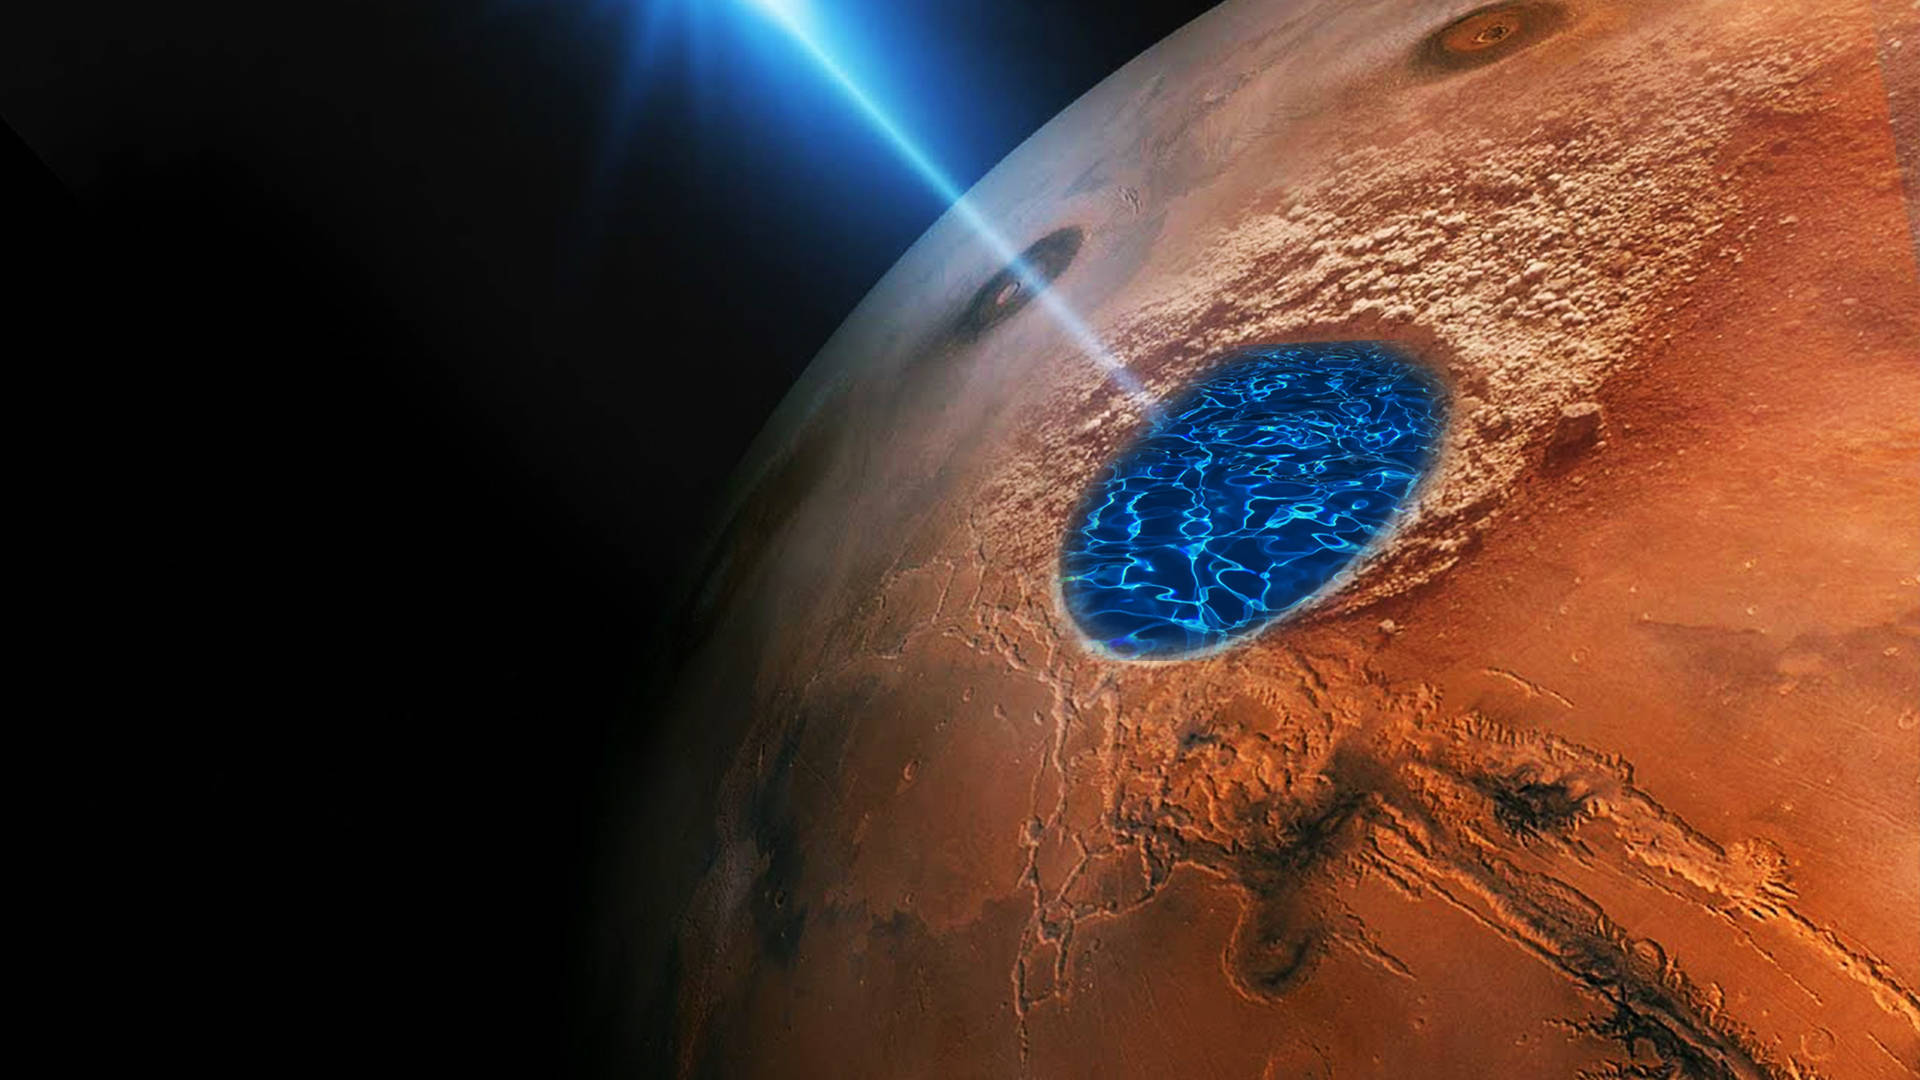 原创科学家在火星上发现液态水既然有水火星移民能实现吗